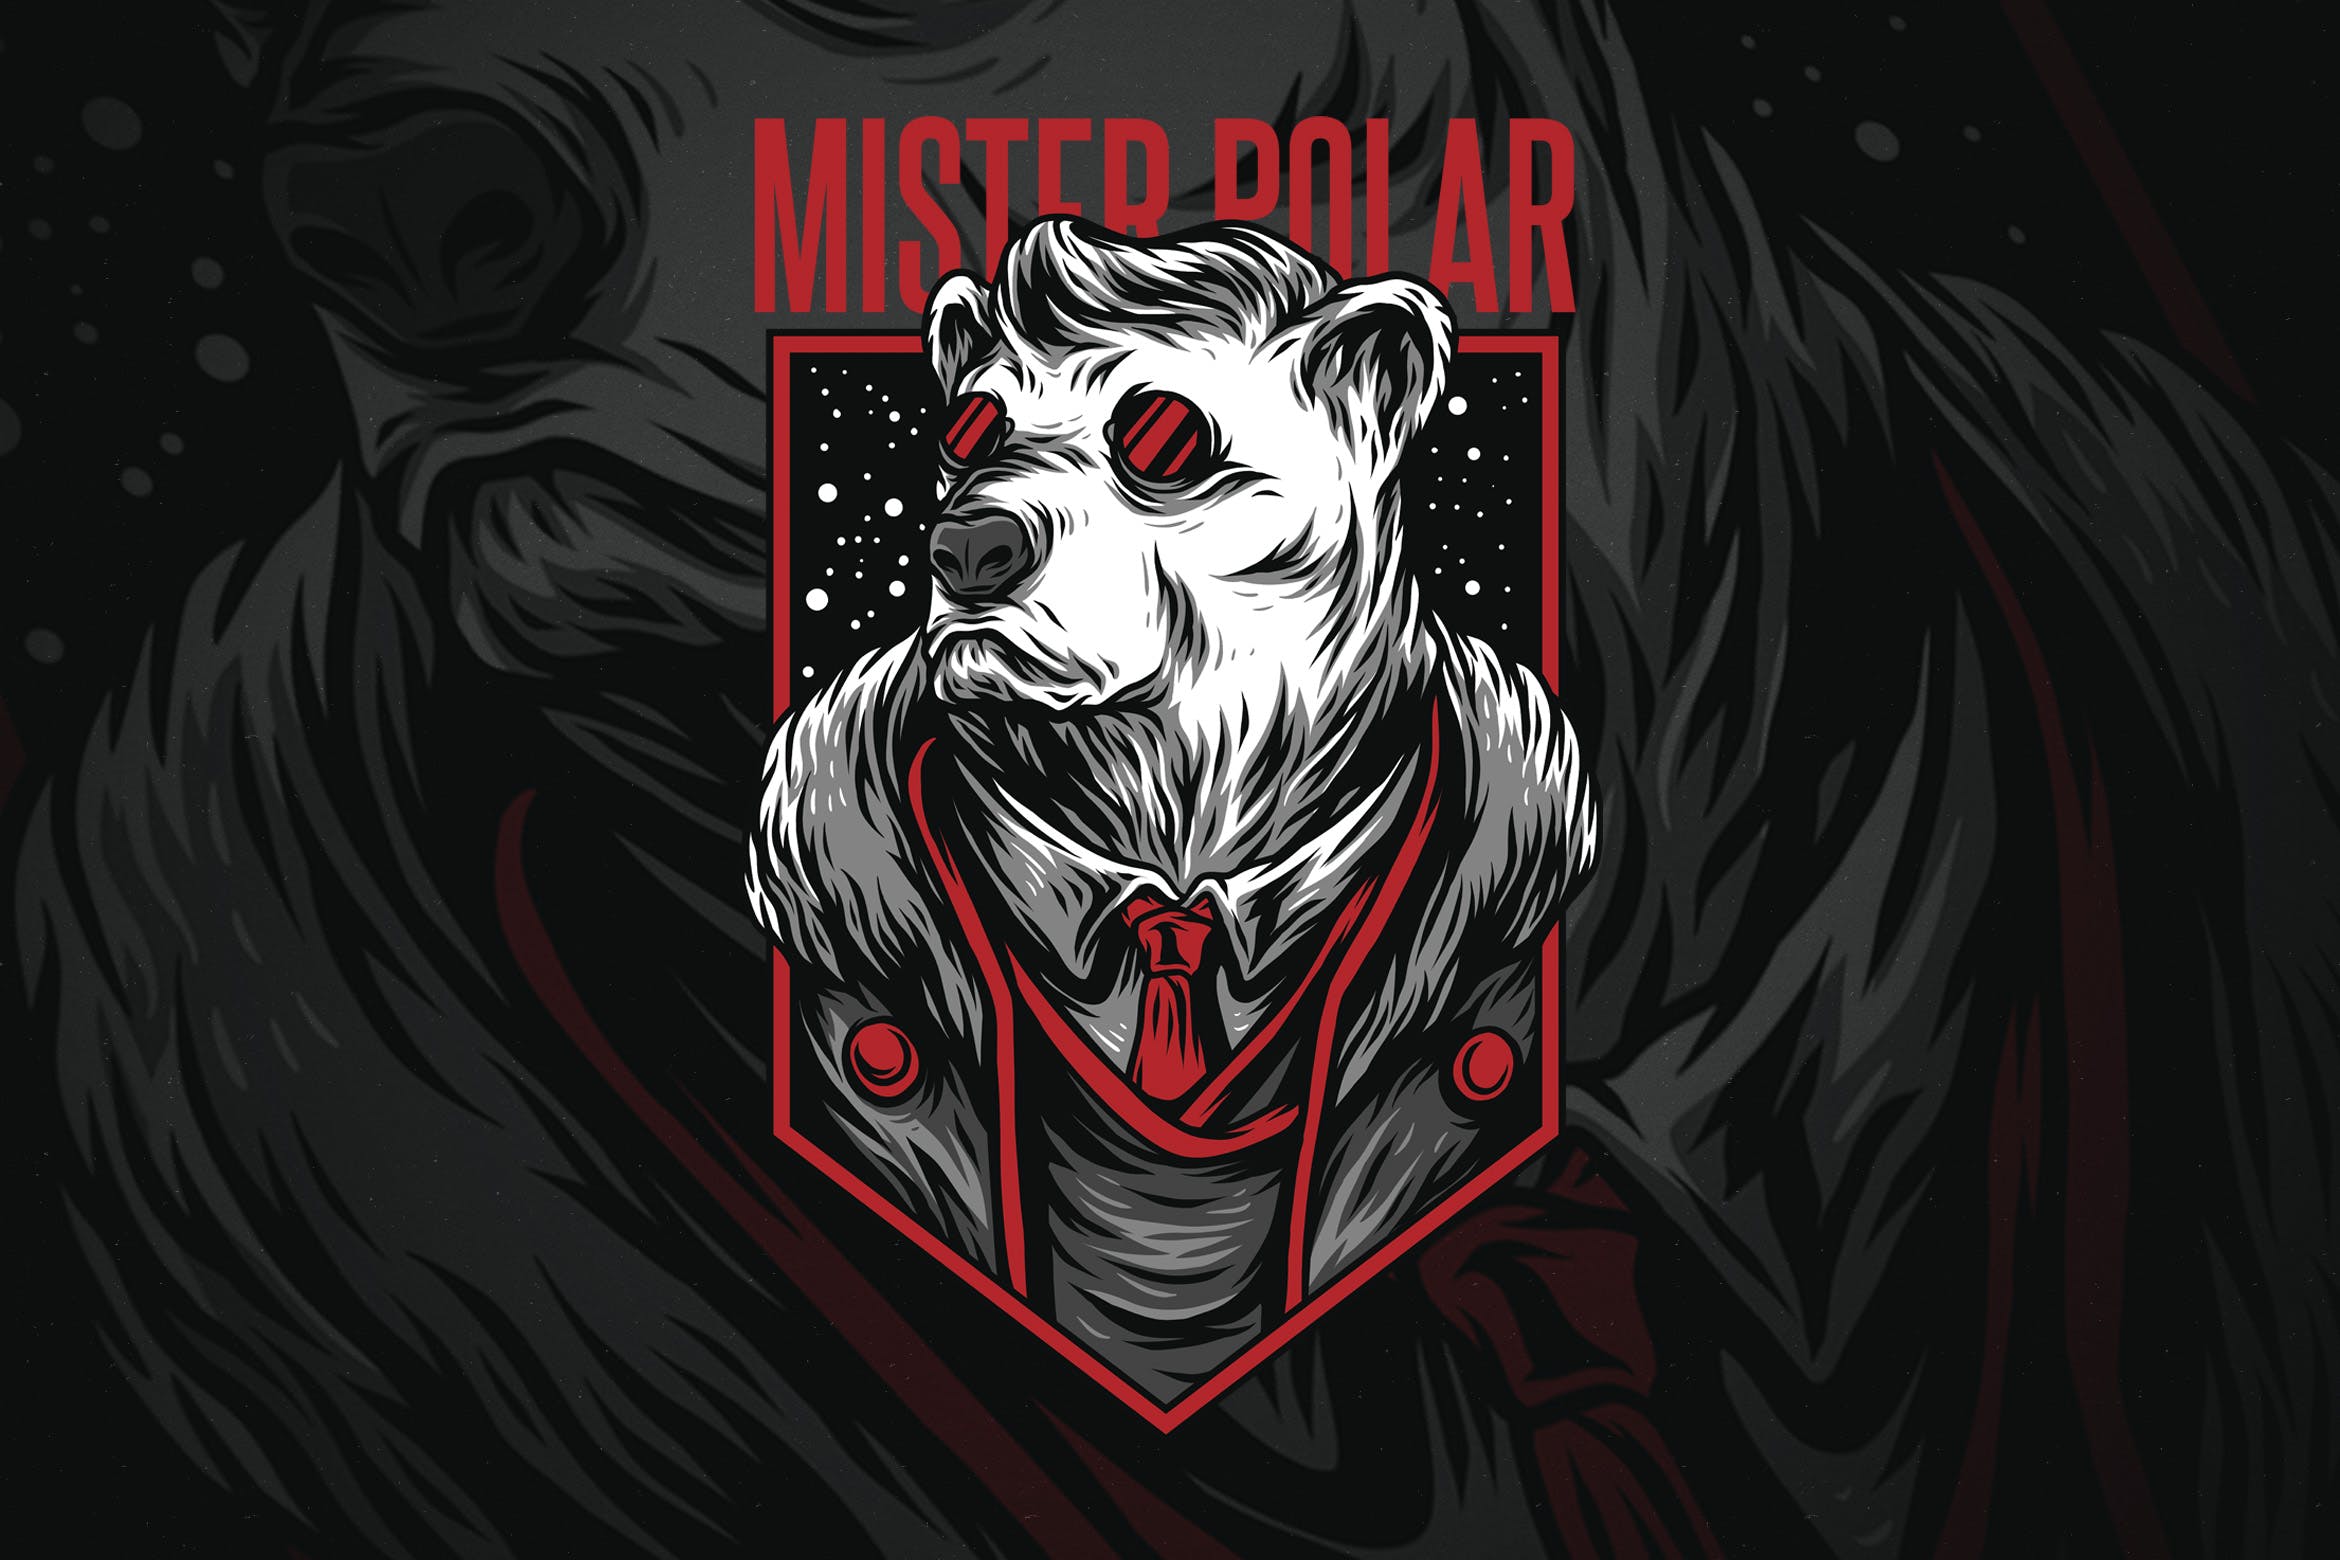 极地先生潮牌T恤印花图案素材库精选设计素材 Mister Polar插图